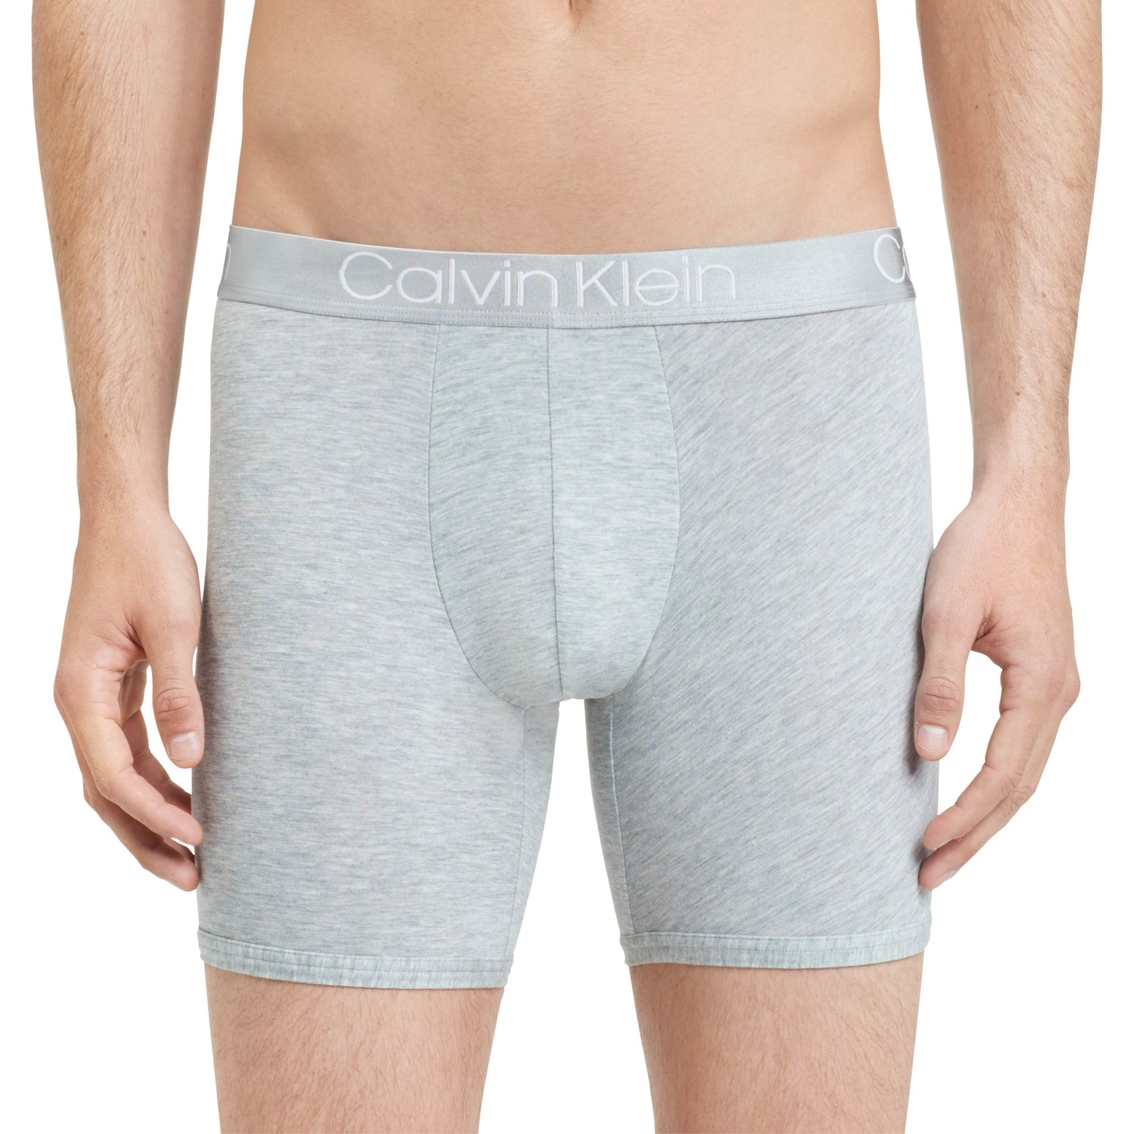 Calvin Klein Underwear - Fashion Accessories Store in Murat